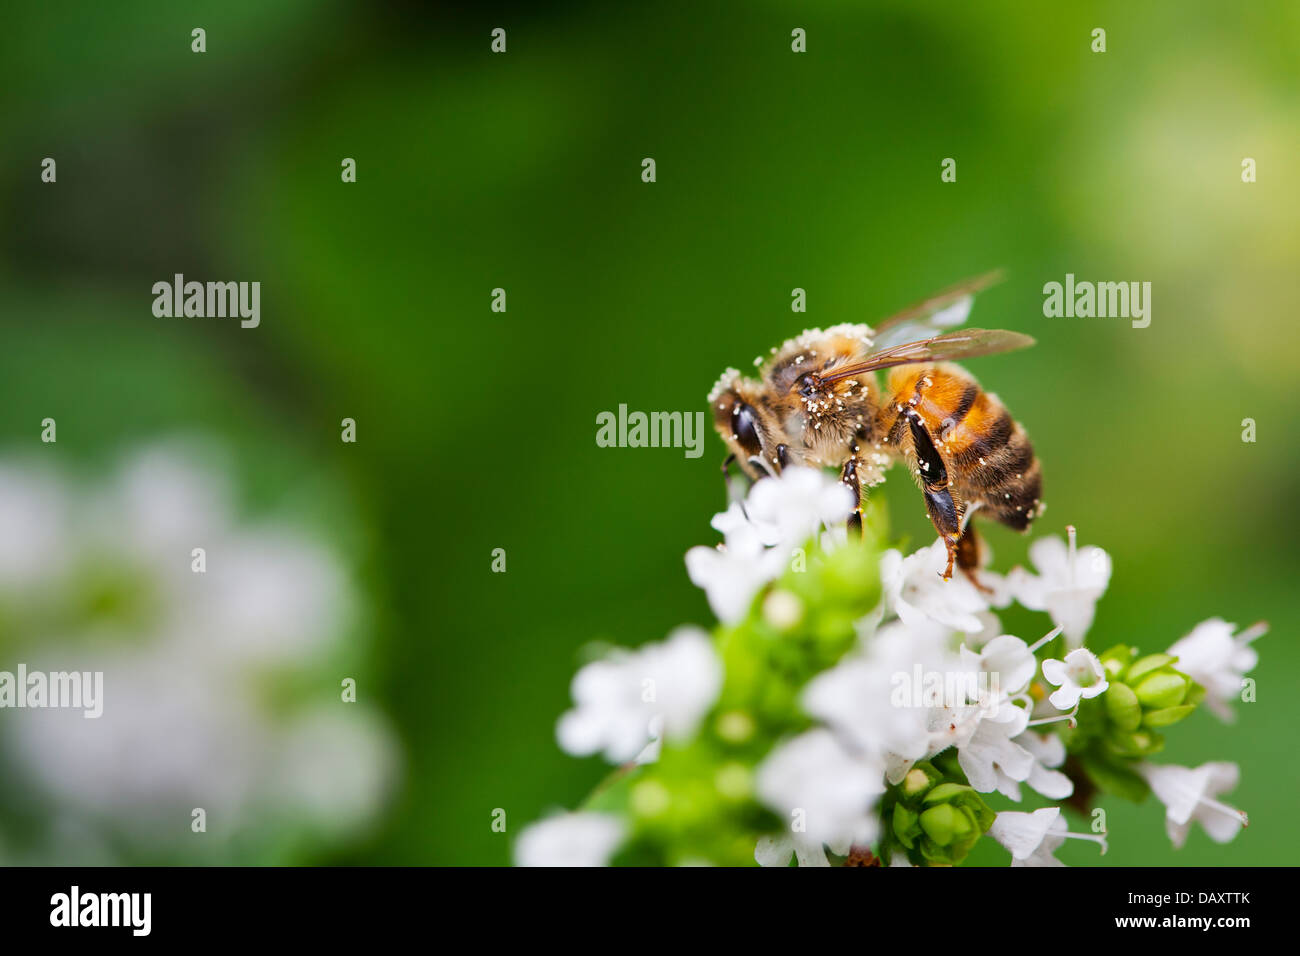 Close-up de una abeja de miel sentada en una flor blanca en un jardín interno. Foto de stock